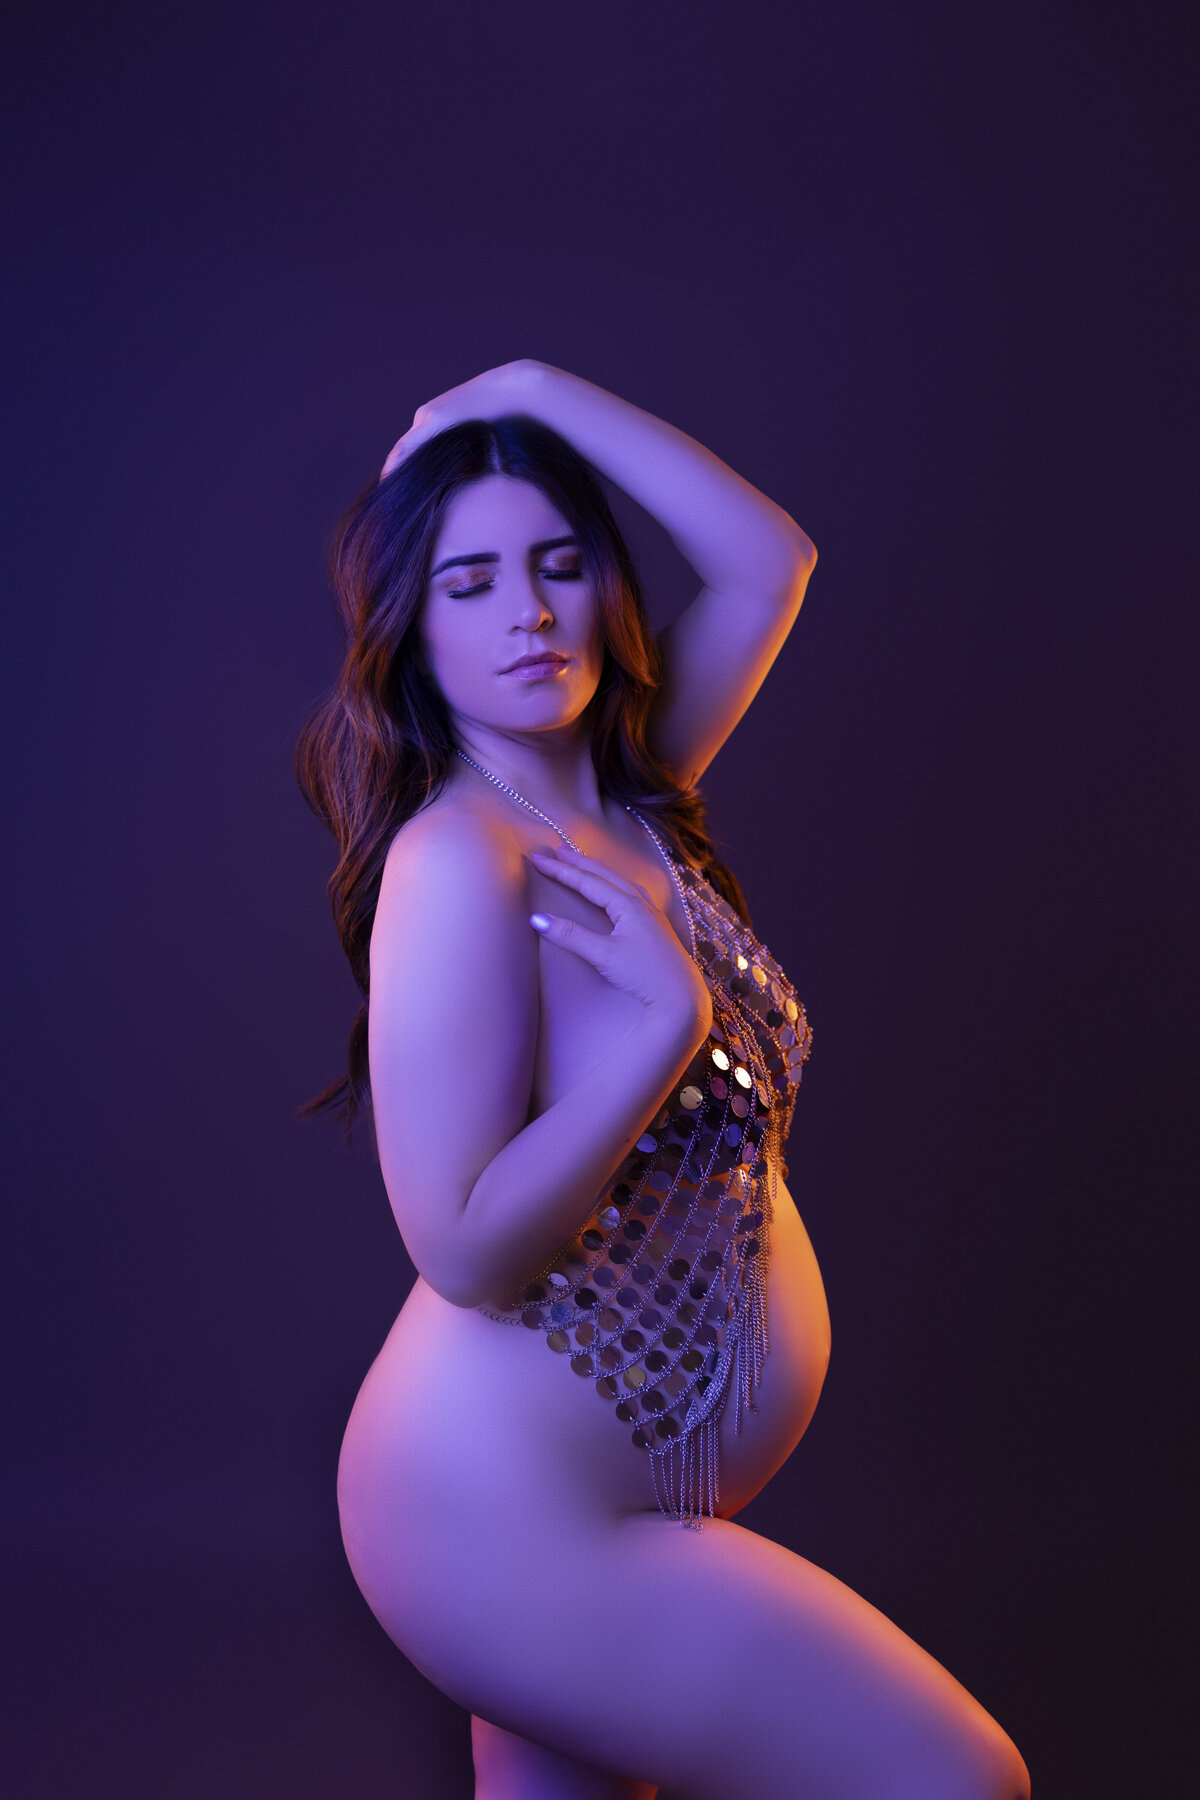 fine art nude maternity photograph